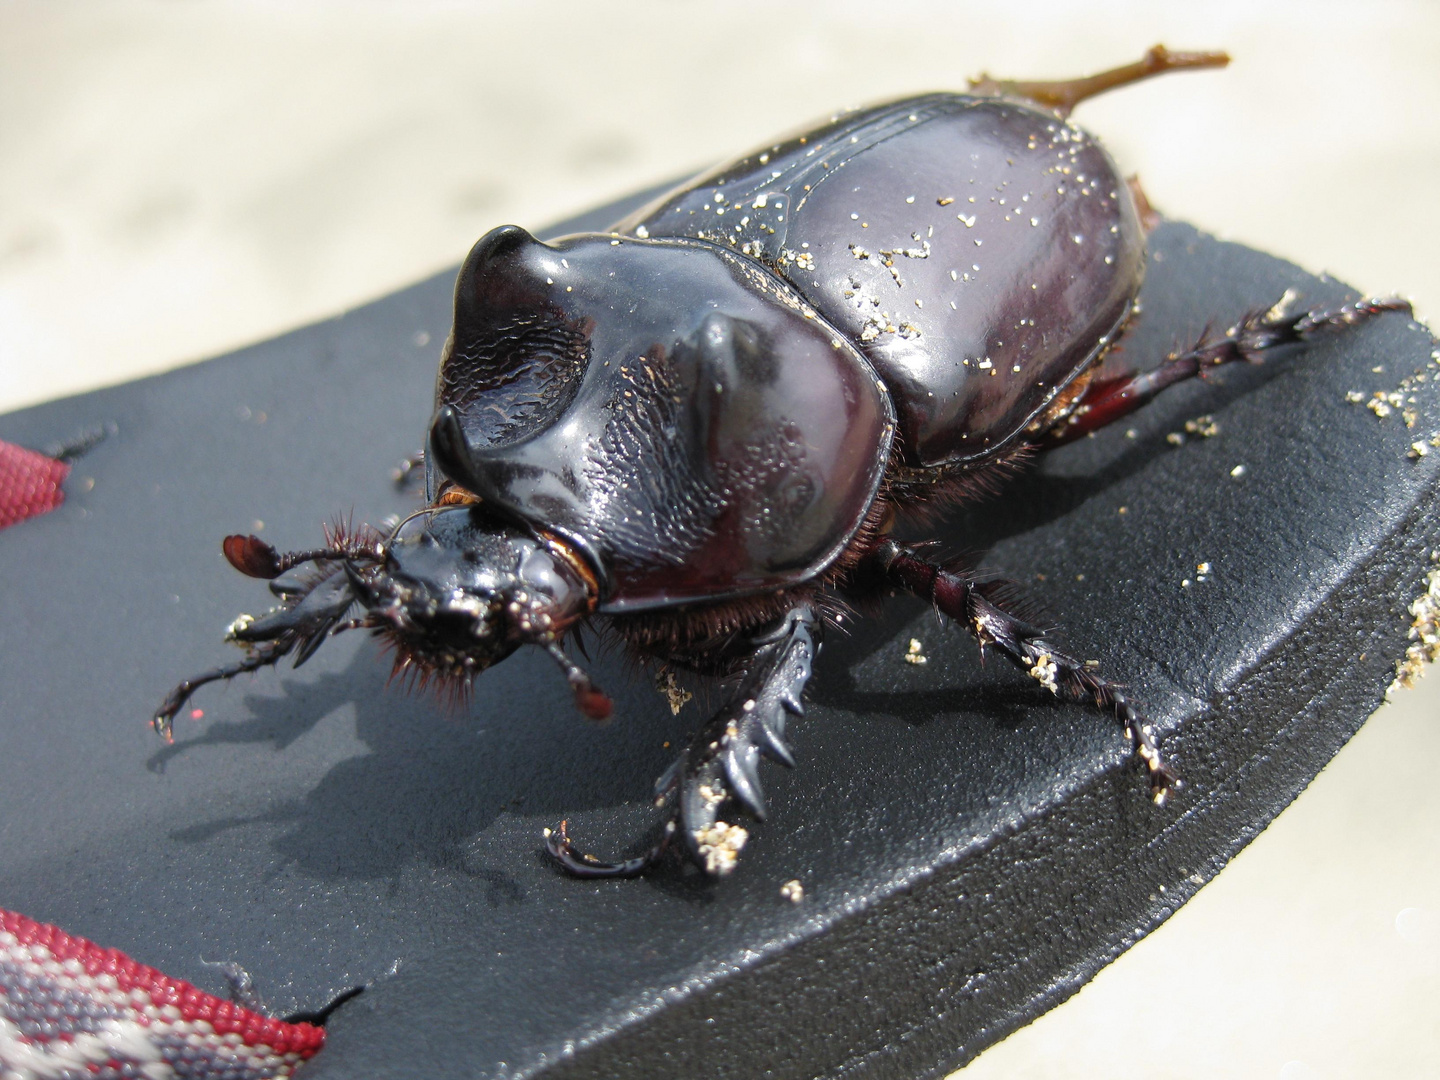 Flotter Käfer in Costa Rica